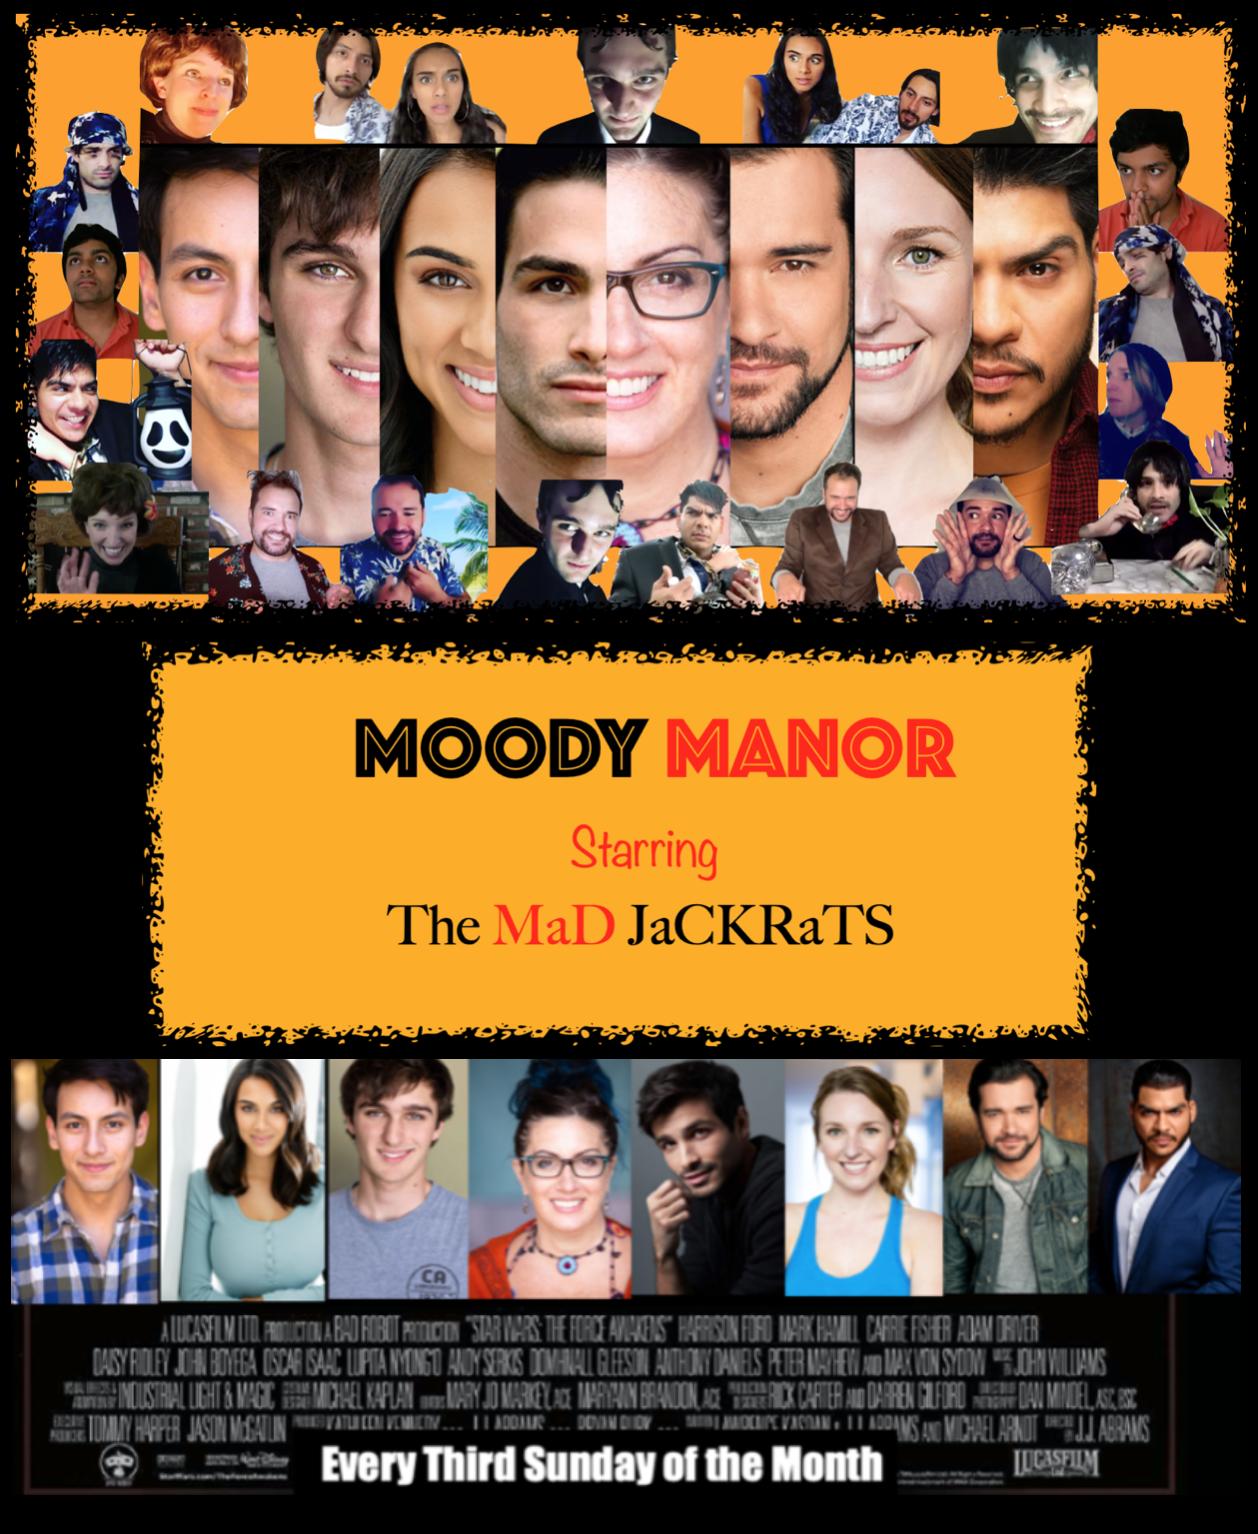 The Mad Jackrats' Moody Manor (2020)